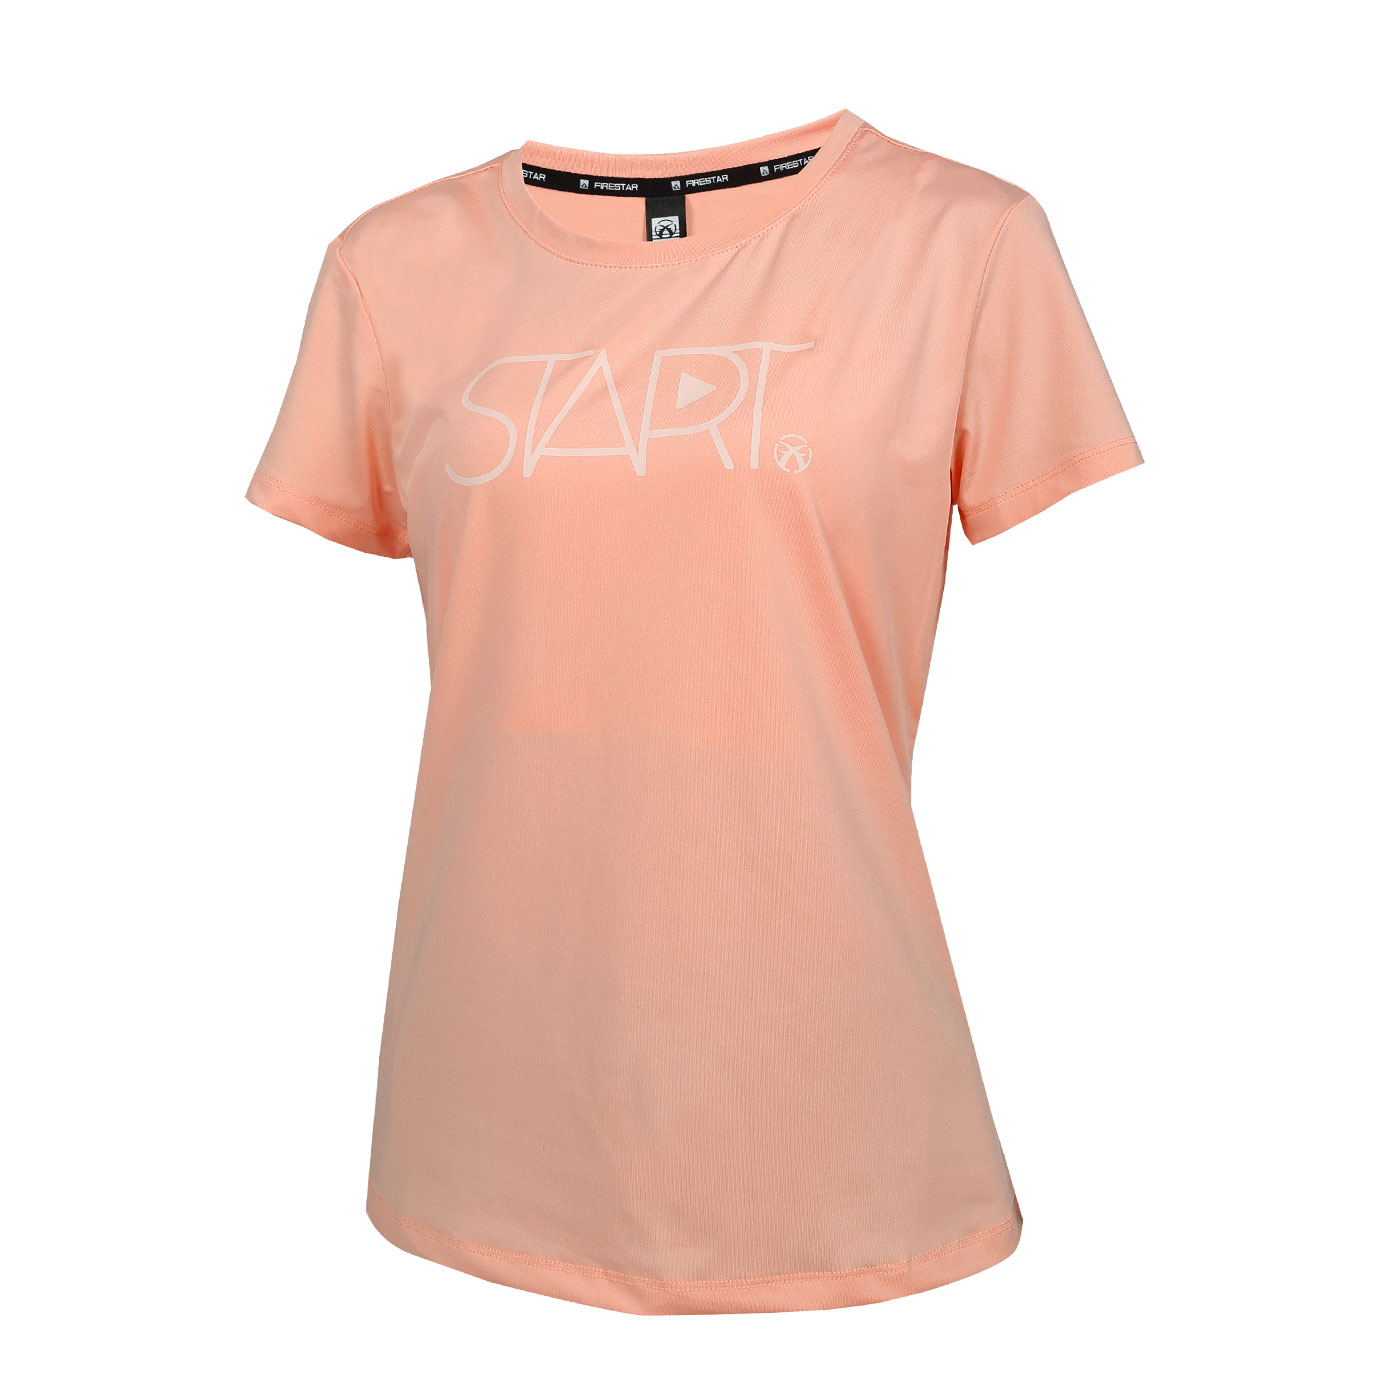 FIRESTAR 女彈性印花短袖T恤  DL465-43